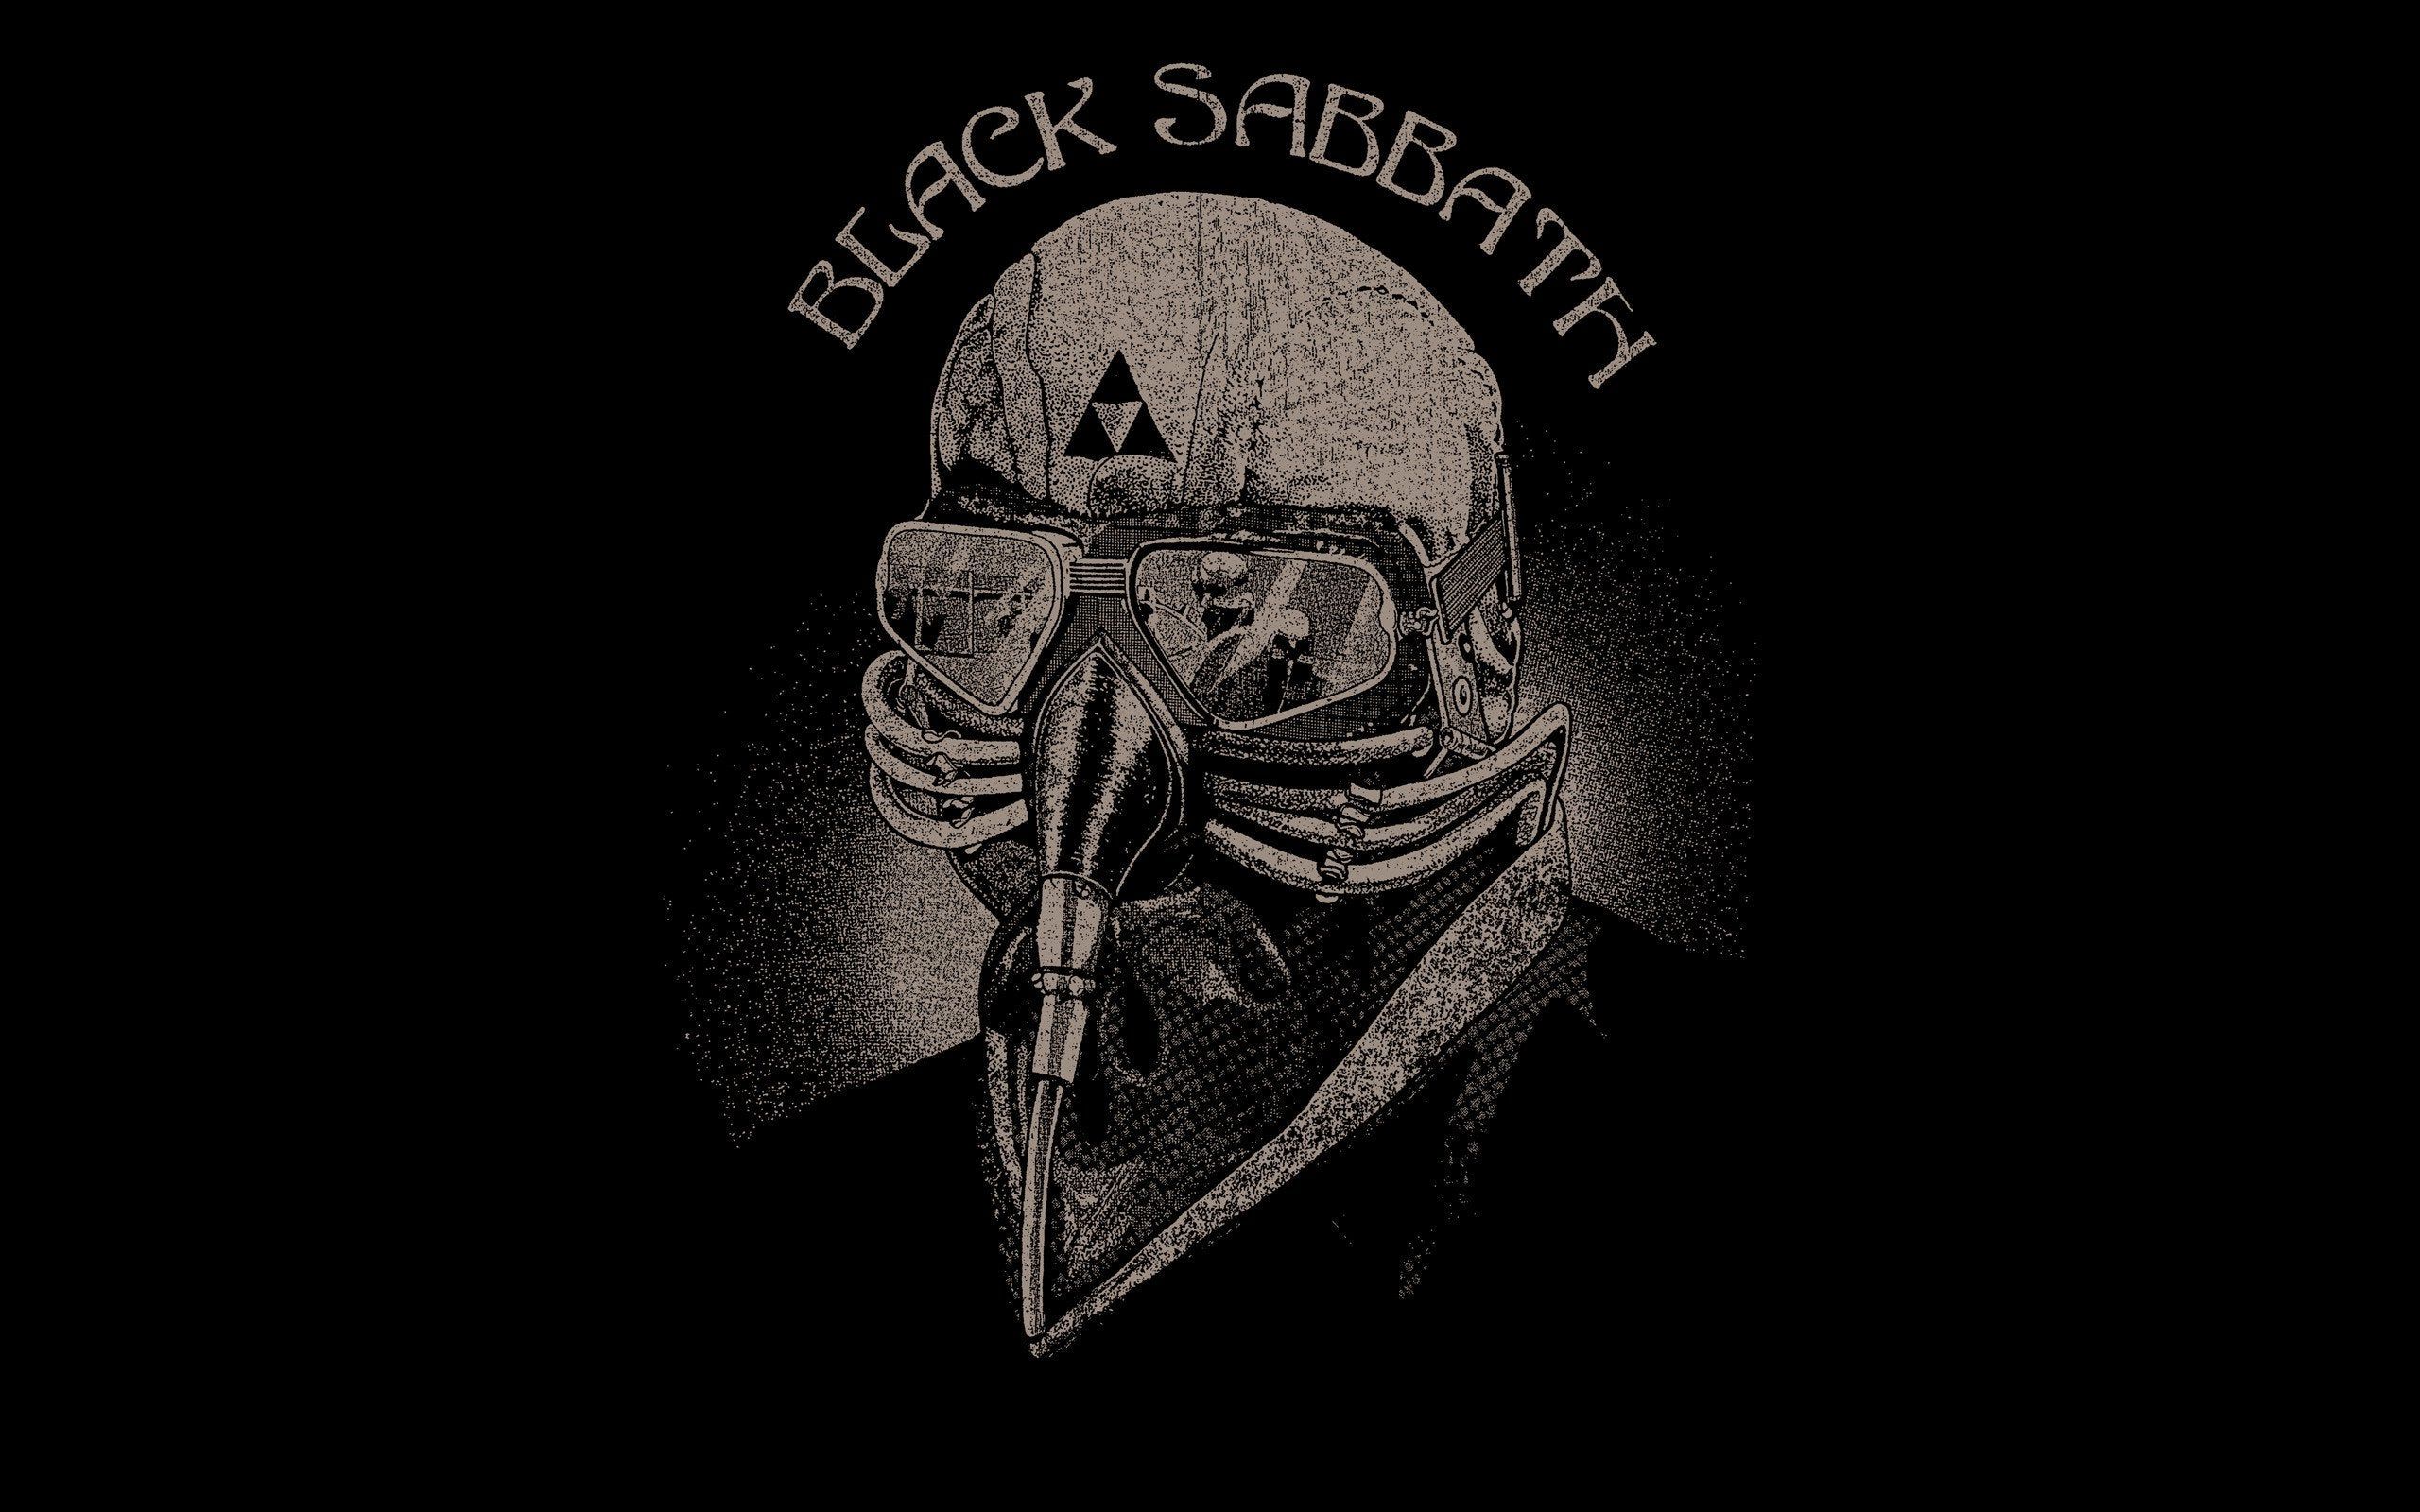 Black Sabbath: Never Say Die [2560x1600]